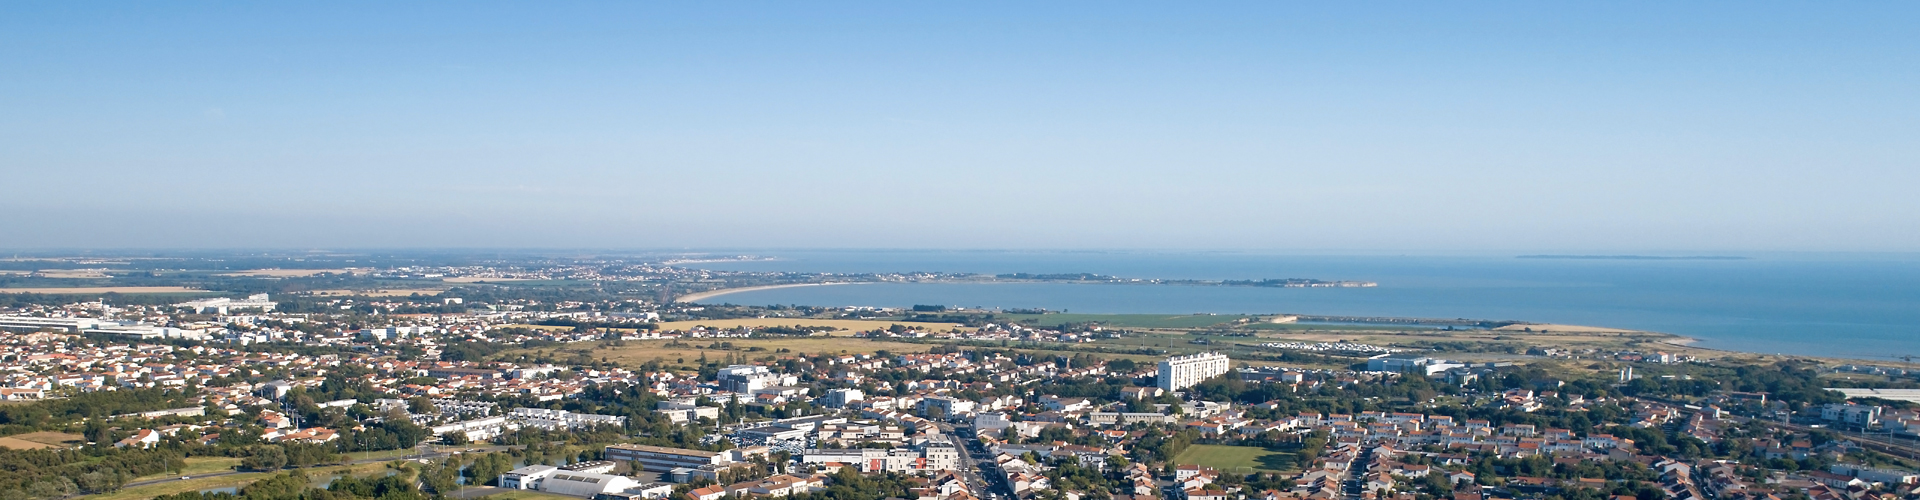 Achat et vente de terrains La Rochelle avec HCT ATLANTIQUE